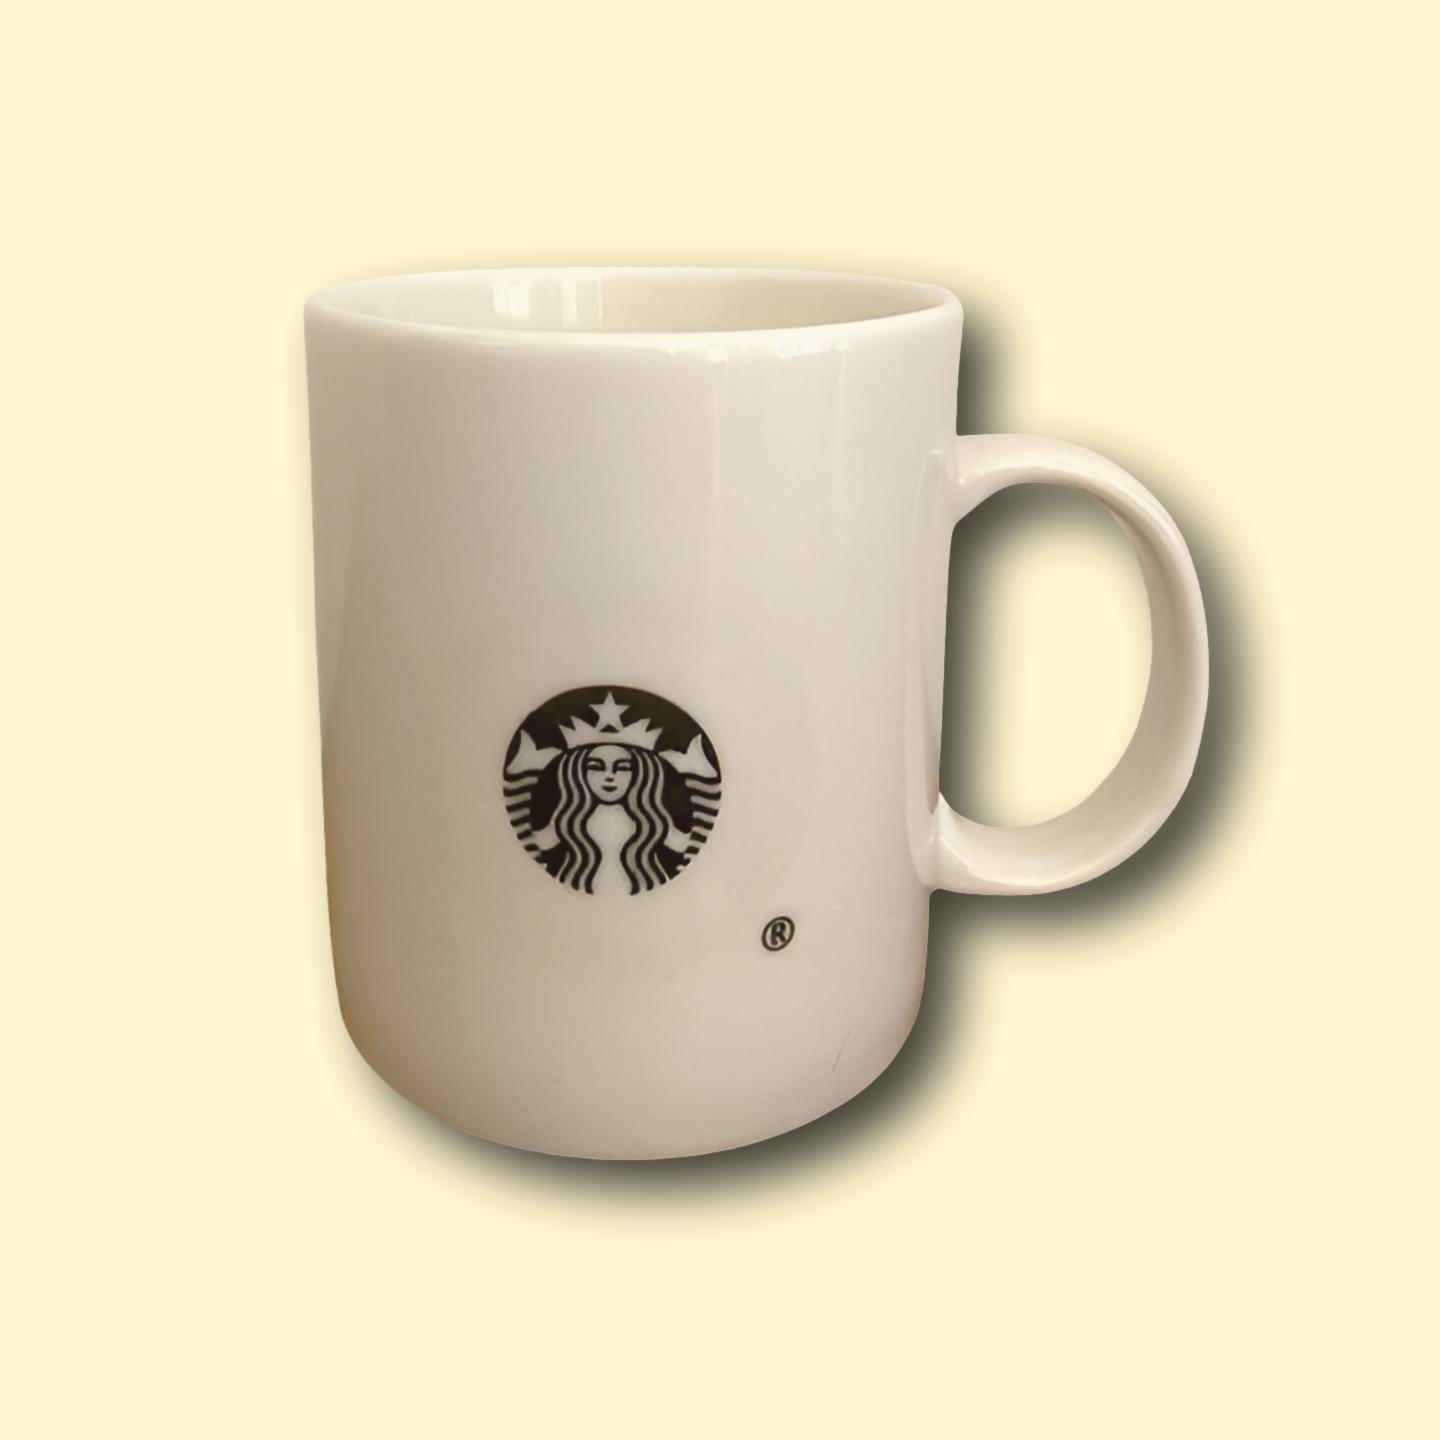 Starbucks Tassen / Mug s